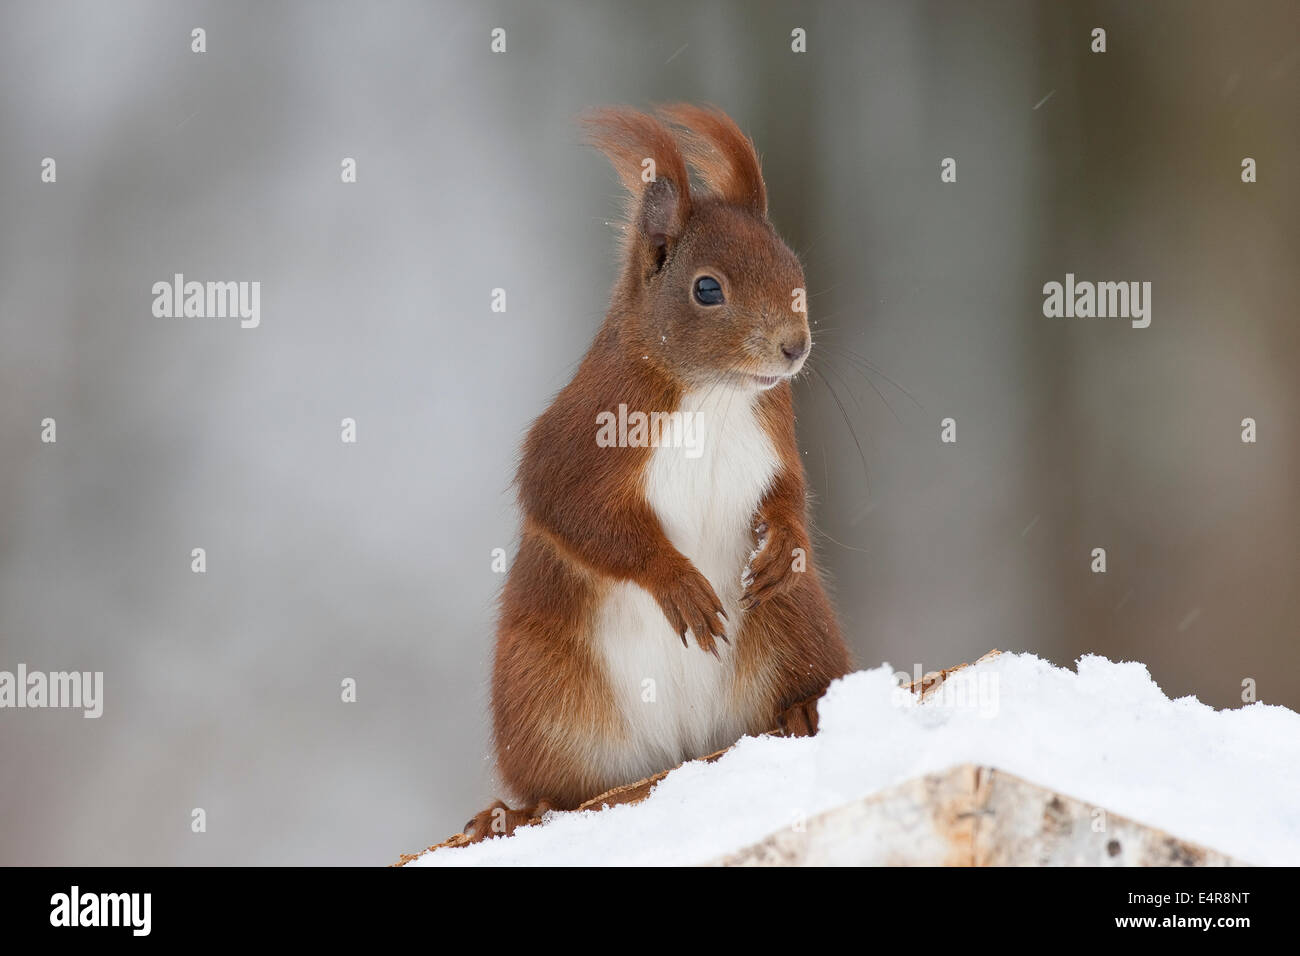 Red squirrel, Eurasian red squirrel, squirrel, birdhouse, Eichhörnchen, am Vogelhaus, Vogelfütterung, Sciurus vulgaris Stock Photo